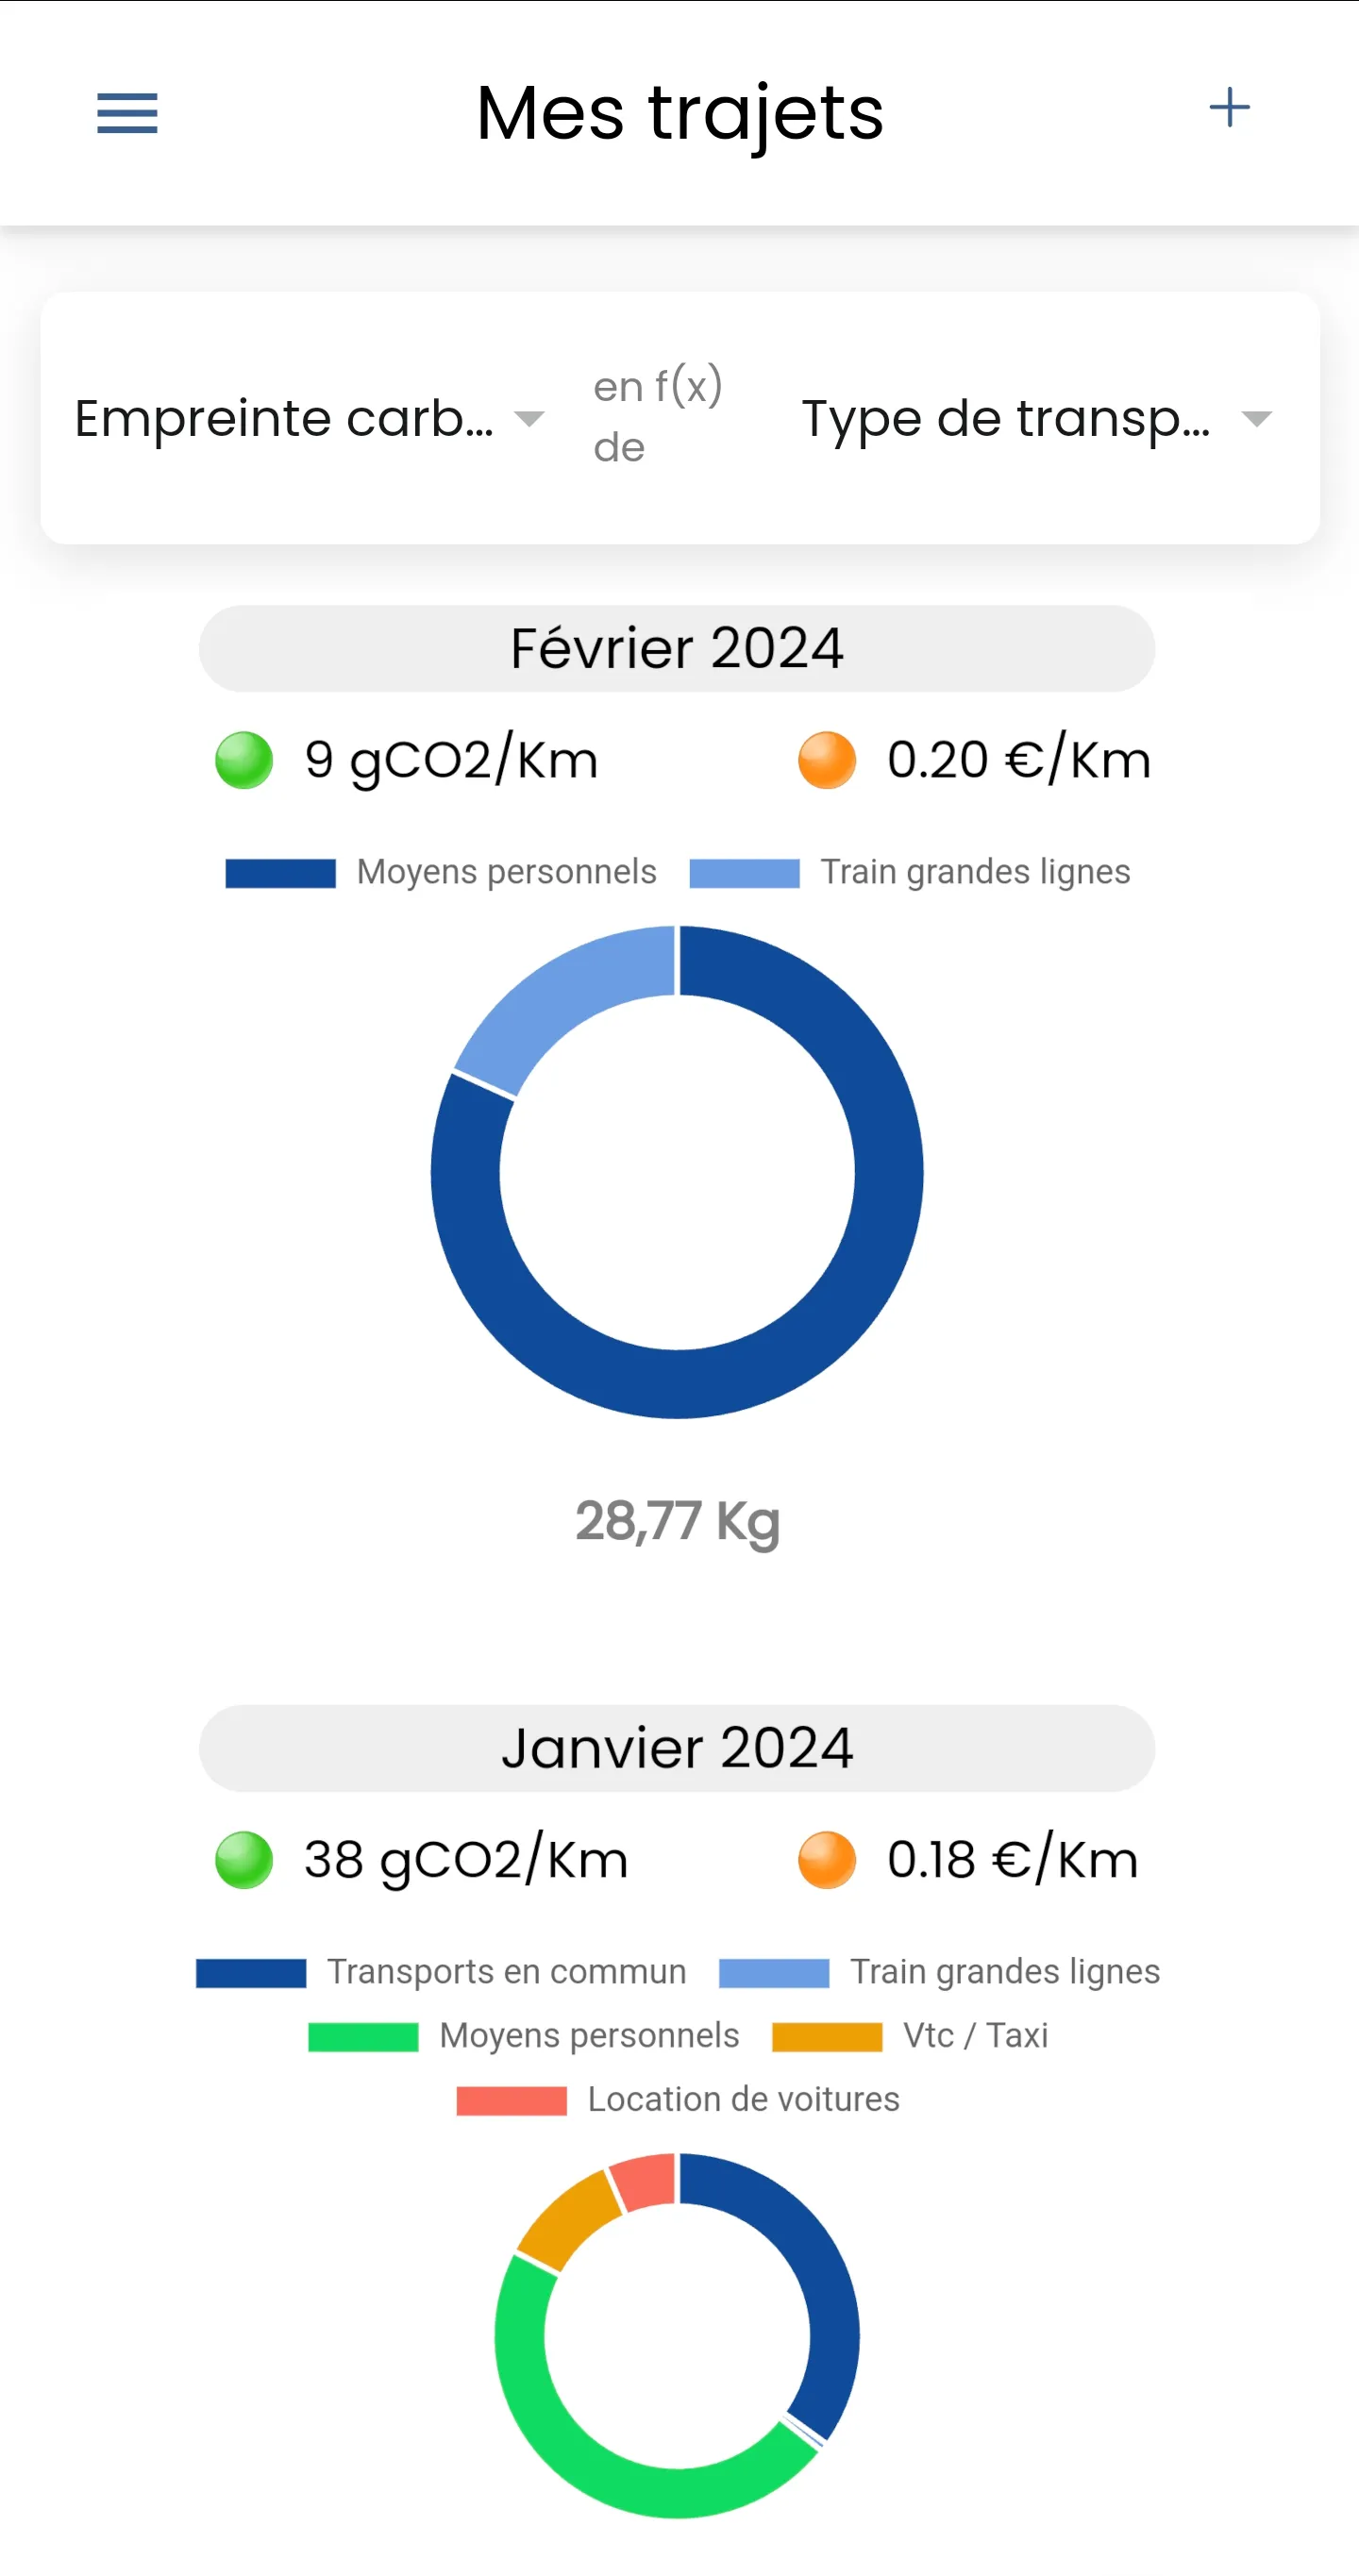 RoadMate mobilise l'interchange généré par vos transactions pour financer des projets de boisement et reboisement de forêts en France, réduisant ainsi votre empreinte carbone.